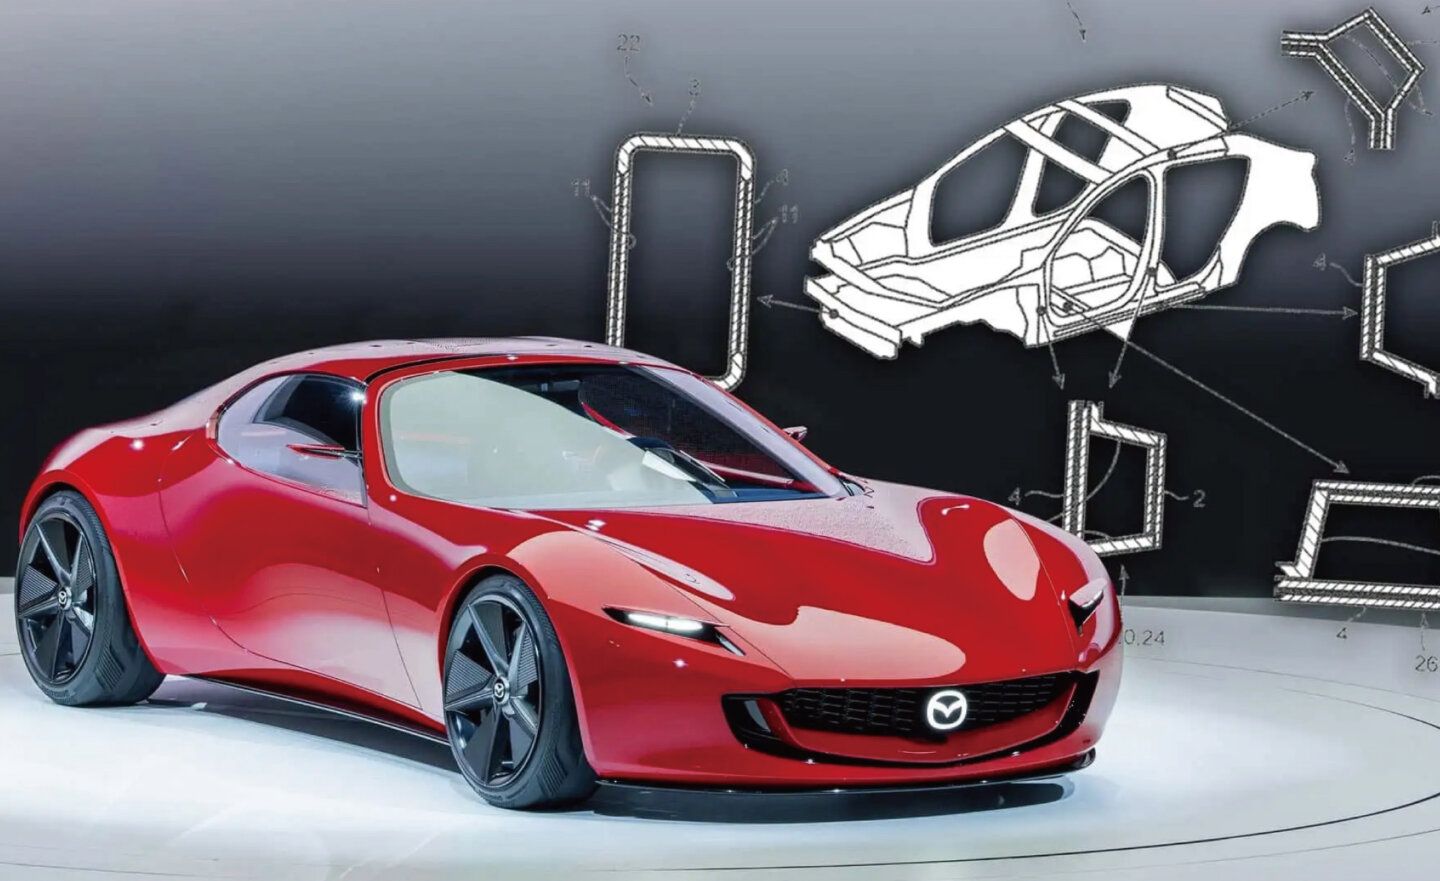 馬自達 Mazda MX-5 傳出可能將採用碳纖維製造車身結構